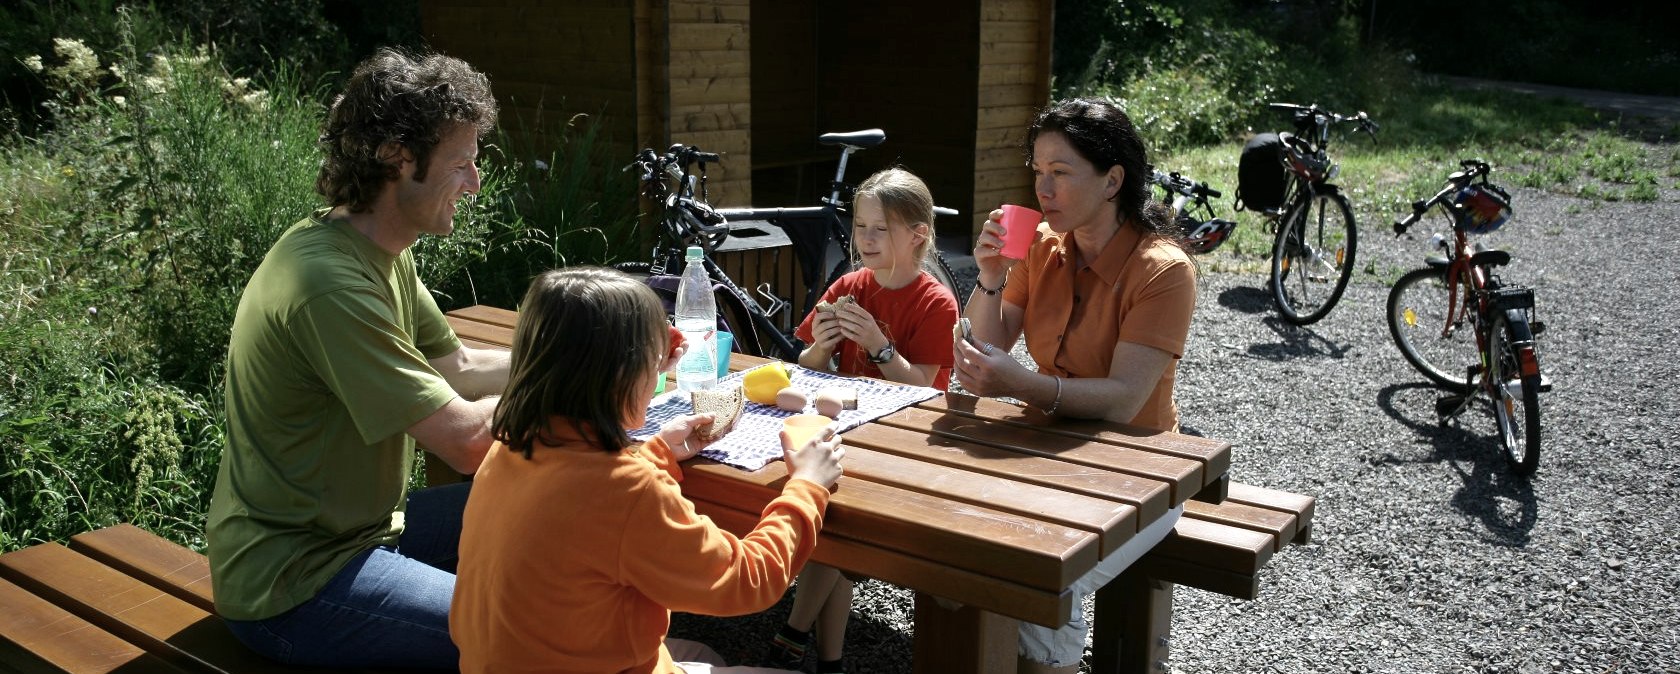 Ausflug mit der Familie, © Eifel Tourismus GmbH, intention